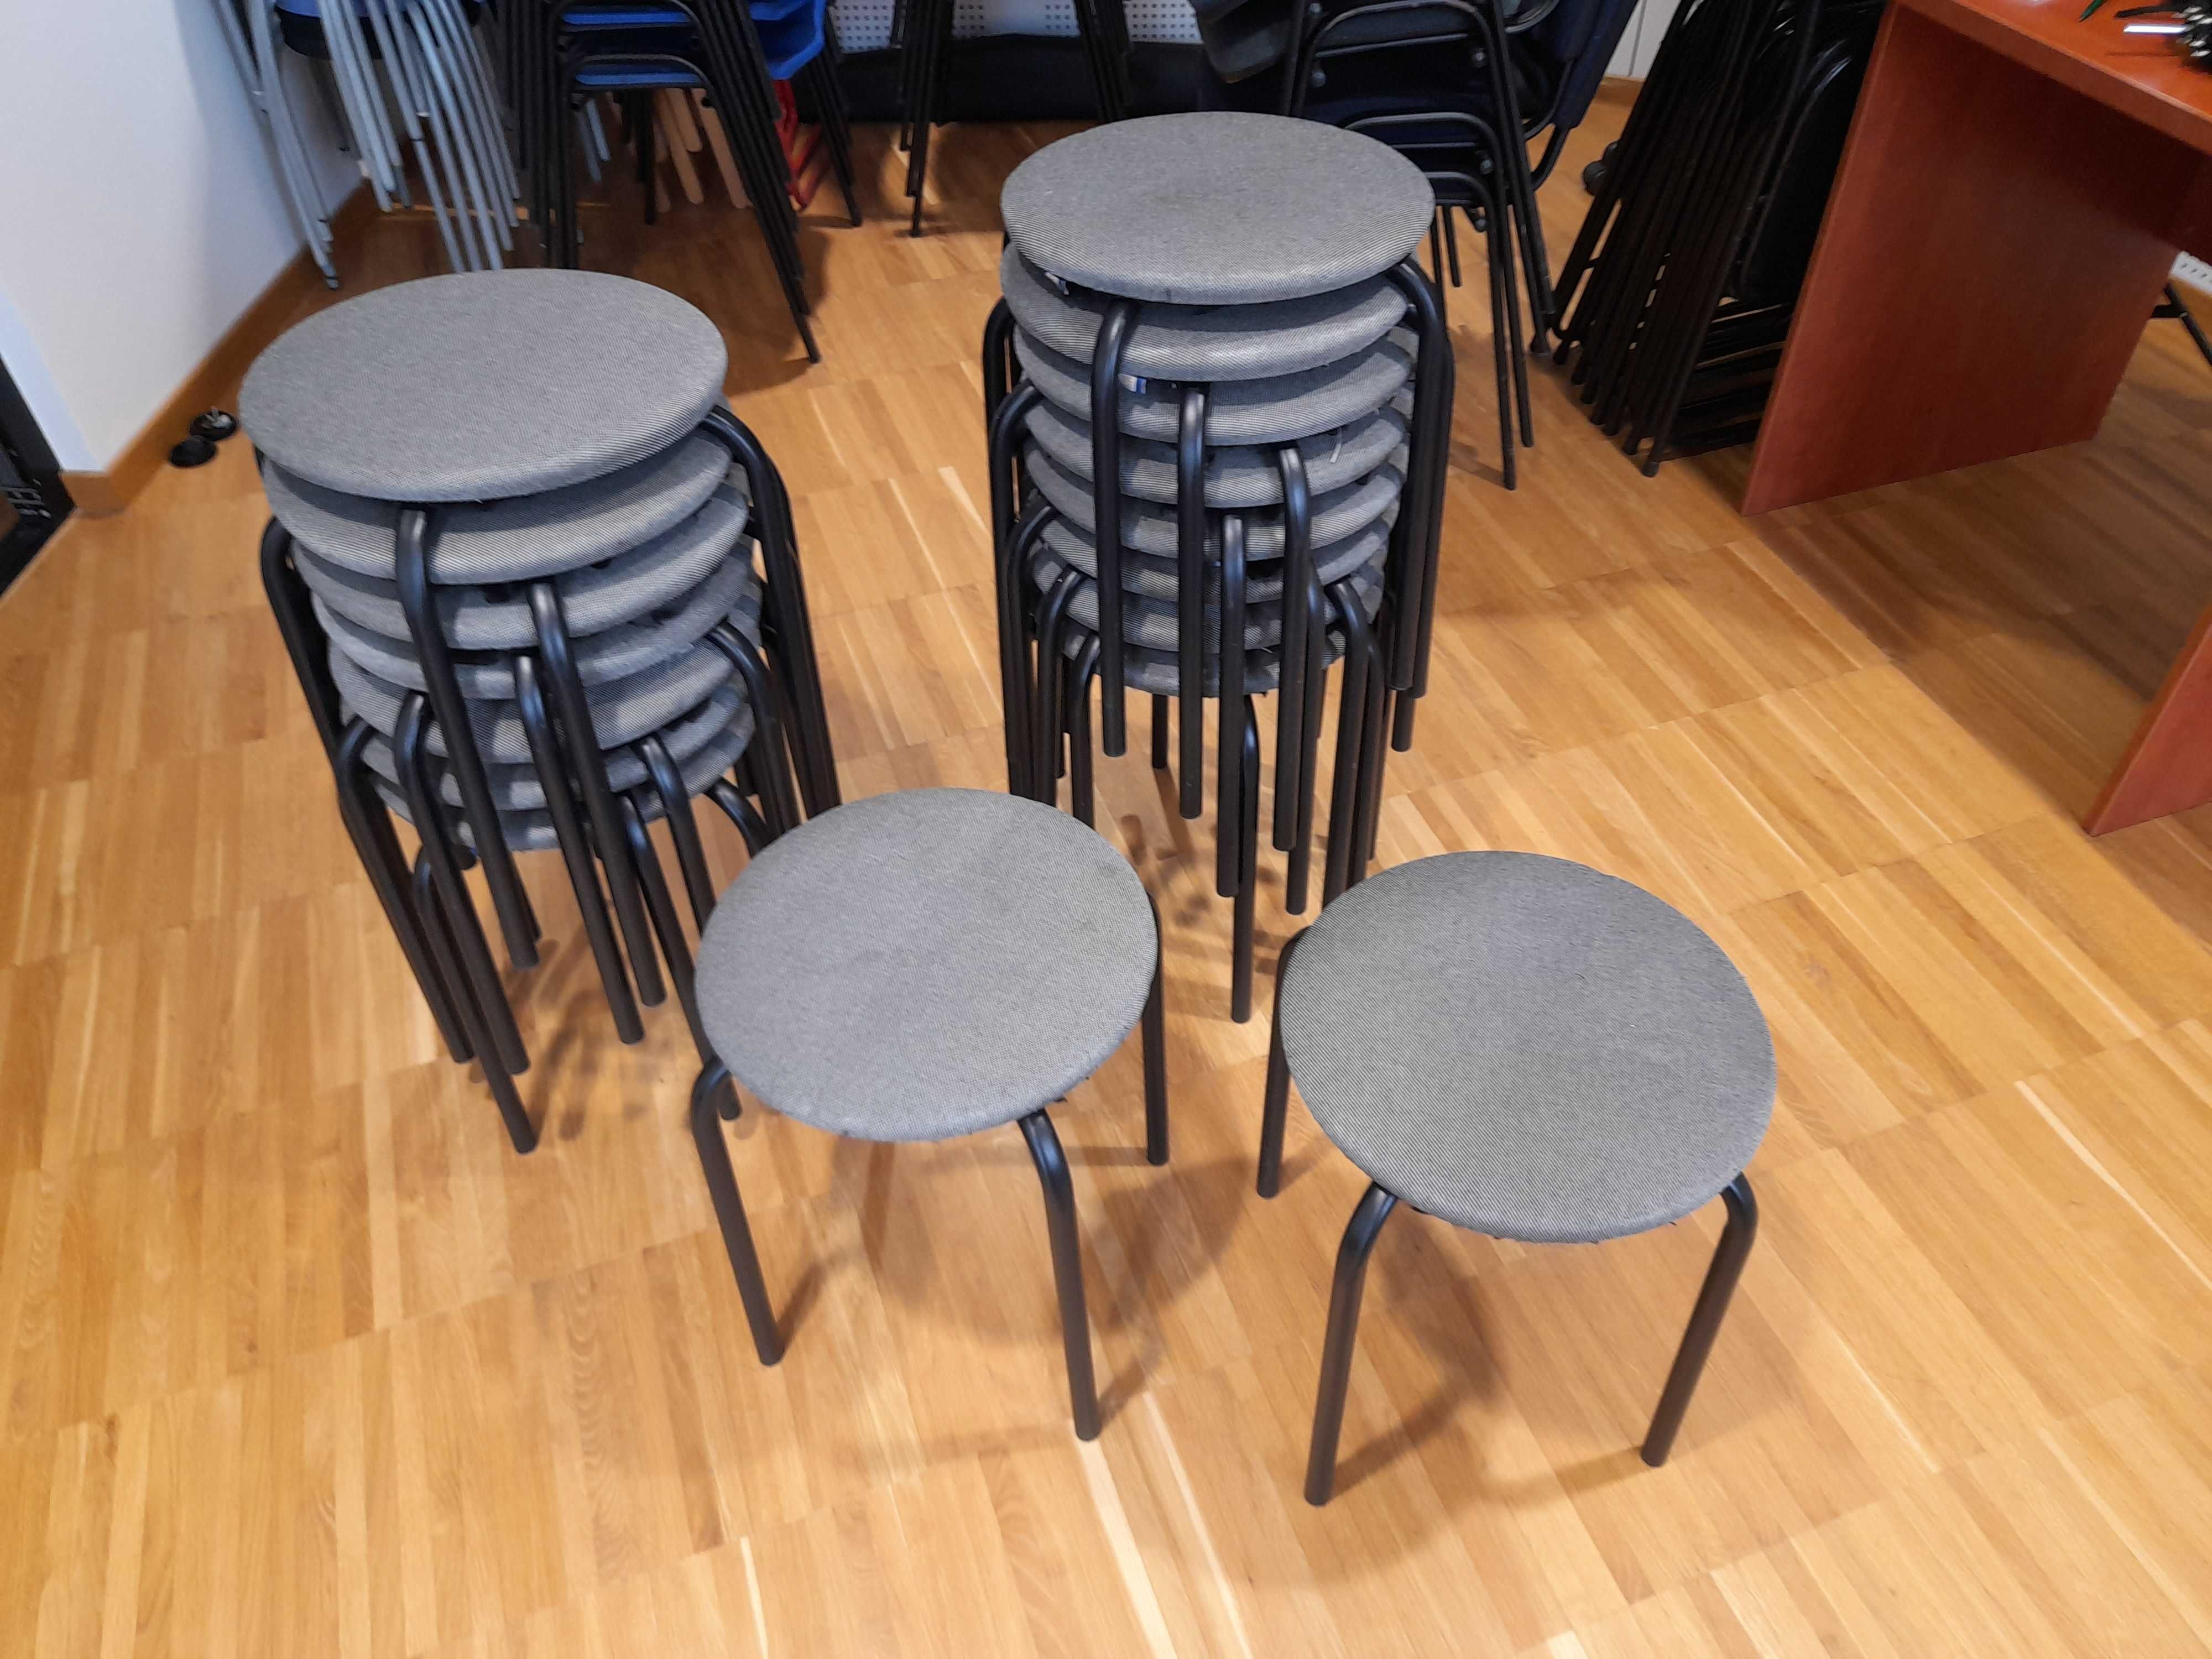 Taboret, stołek okrągły - zestaw 17 sztuk